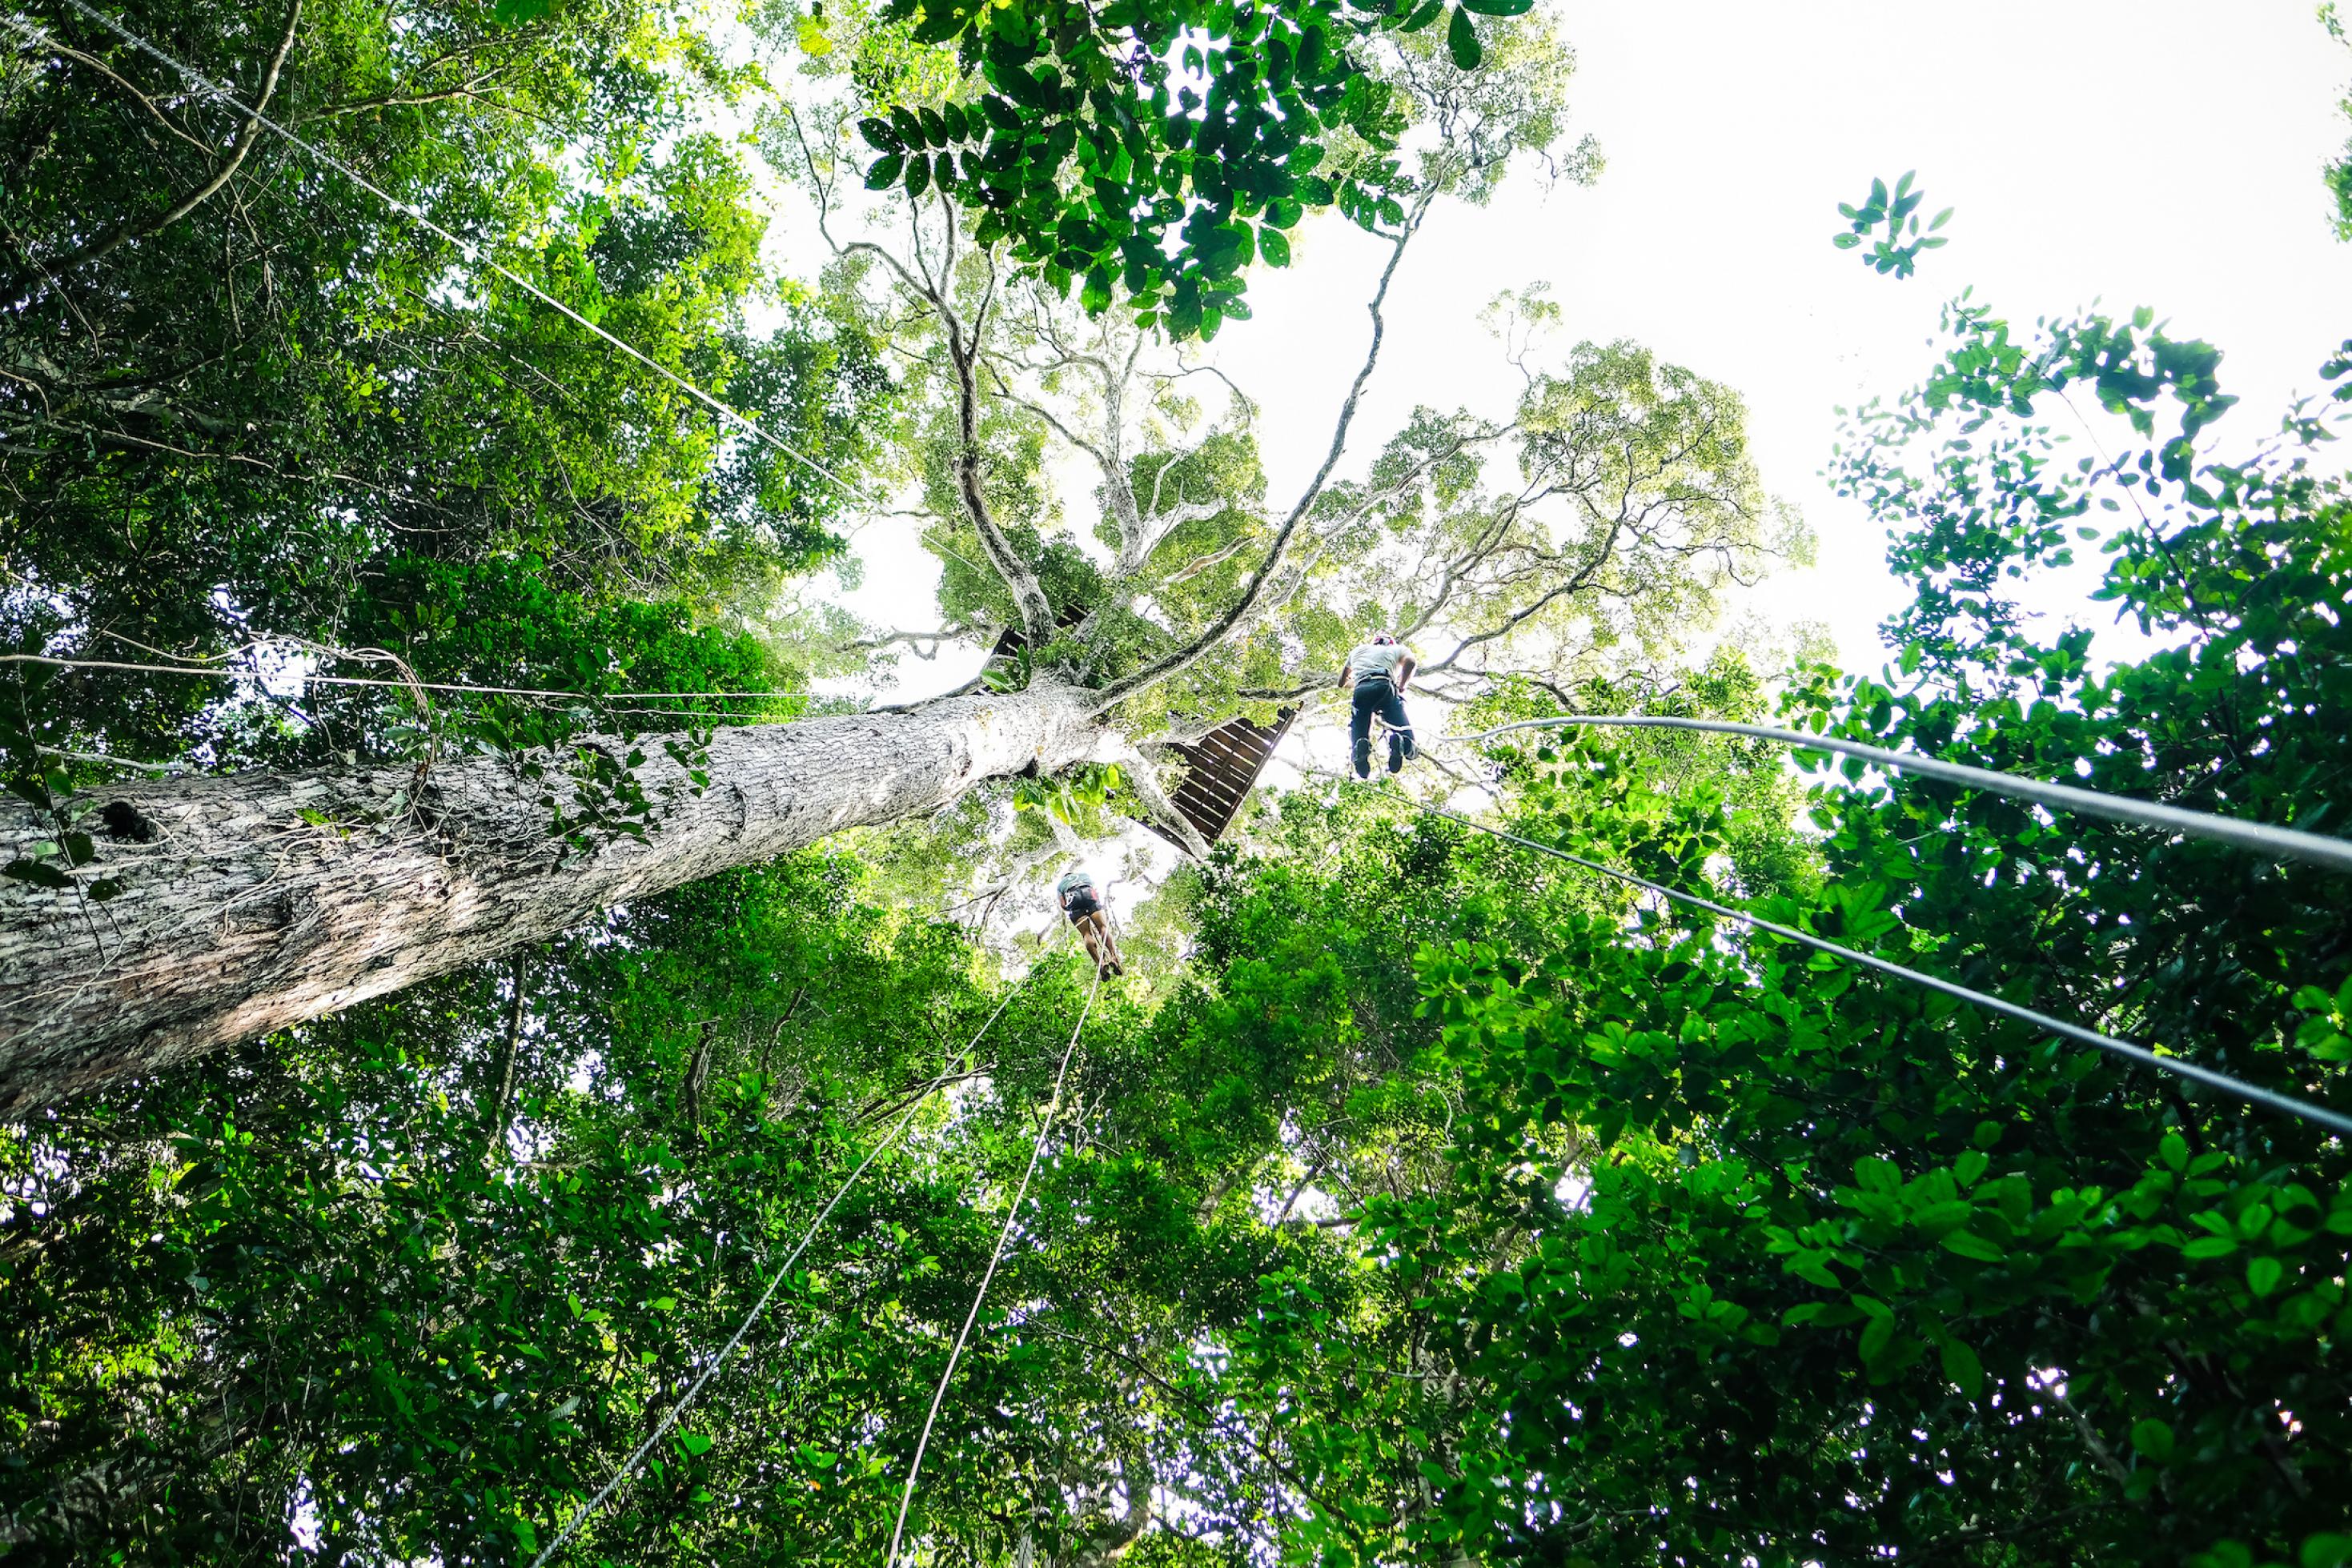 Das Bild stammt aus dem Amazonaswald und zeigt das Kronendach von unten. Auf einem der Bäume ist eine Holzplattform, von der sich zwei Menschen abseilen.